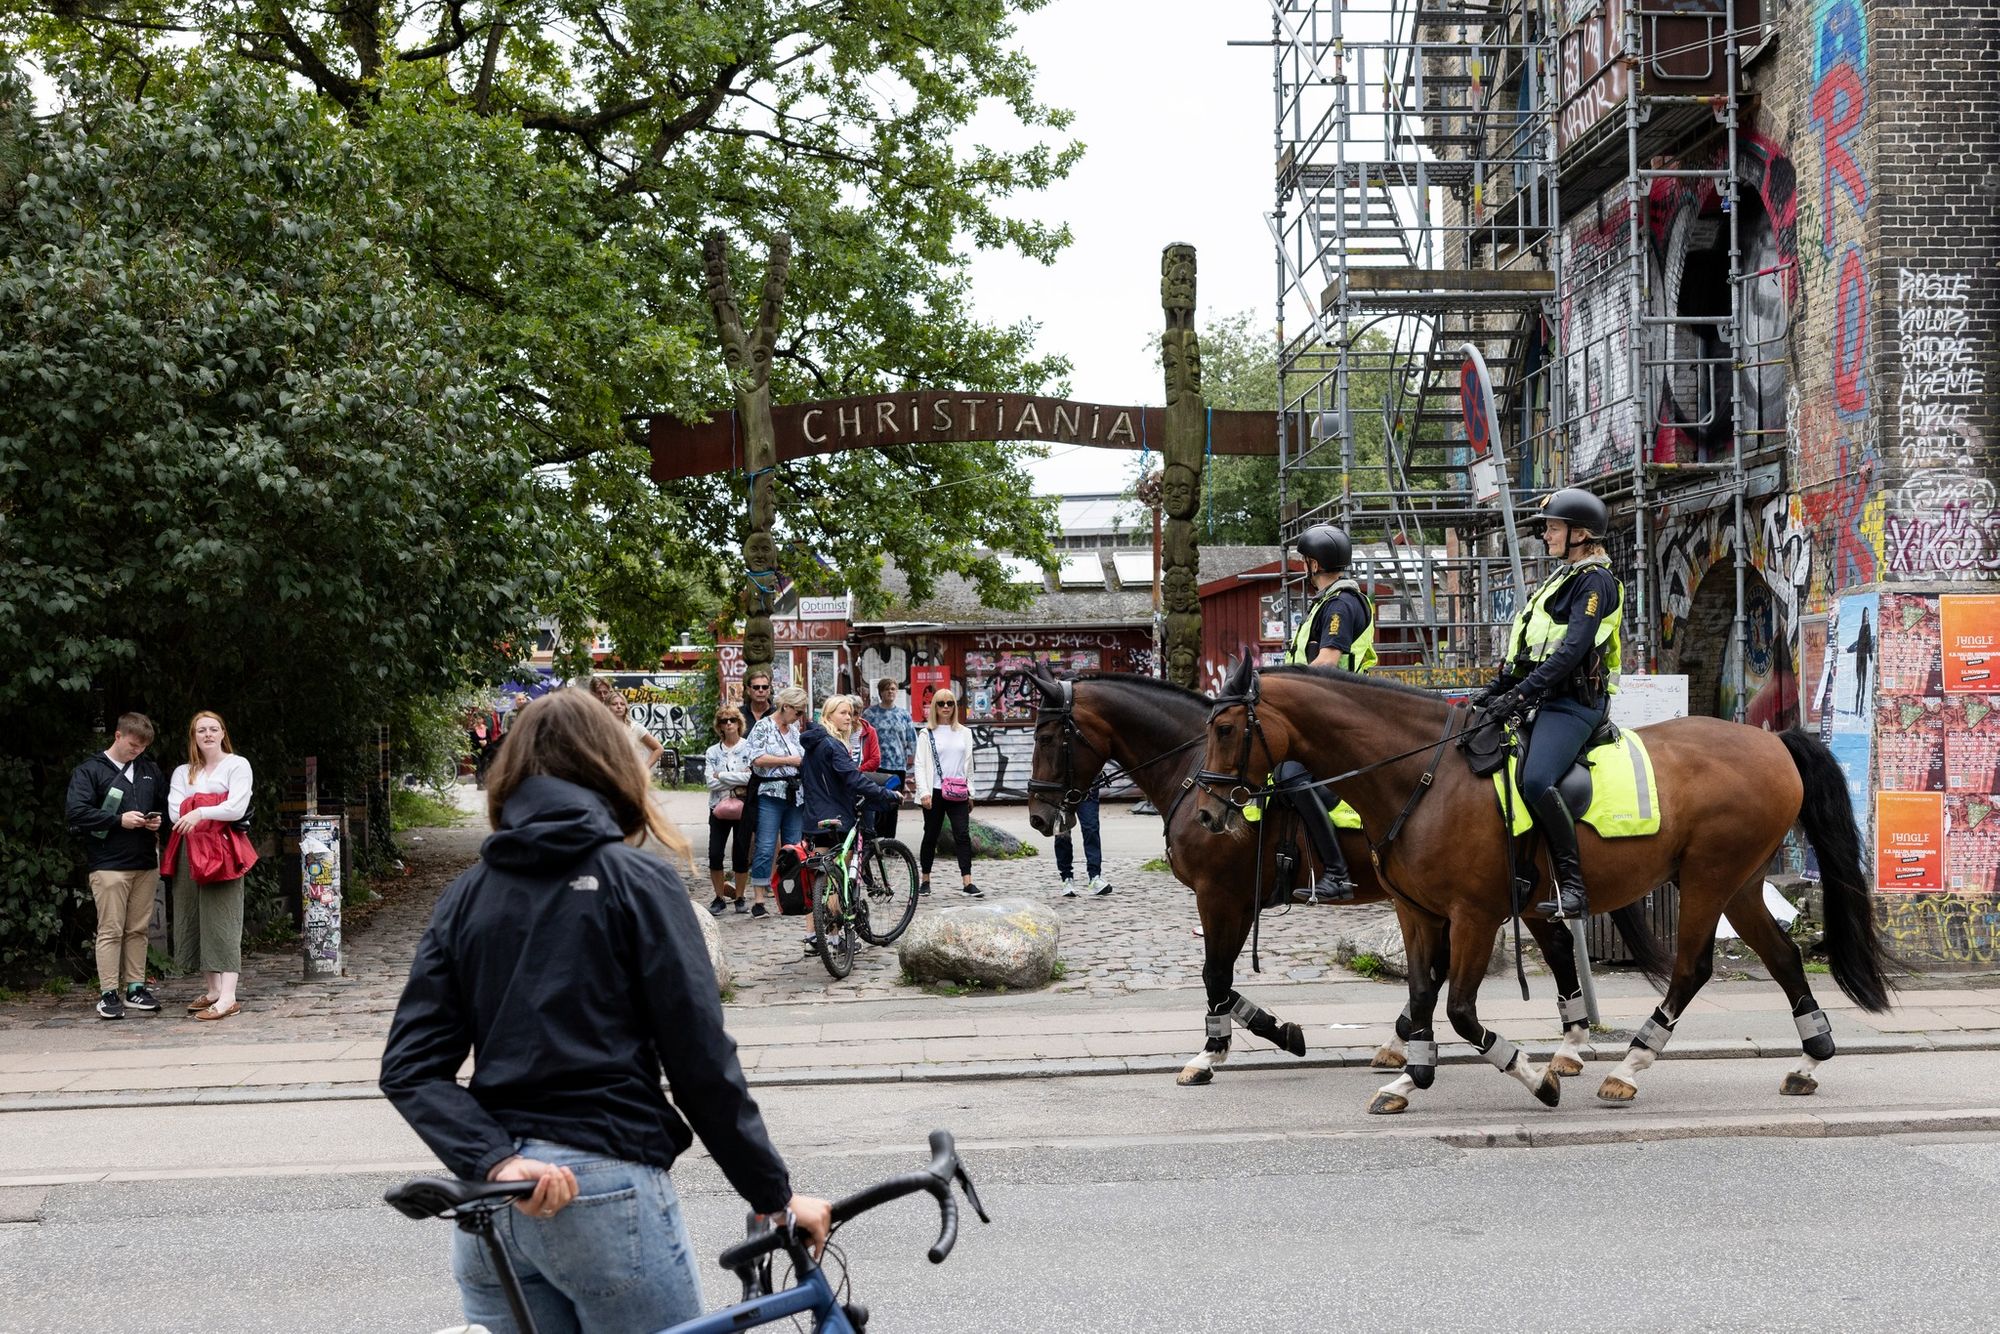 코펜하겐경찰, 크리스티아니아-아마게르, 뇌레브로 2곳 검문 구역 설정